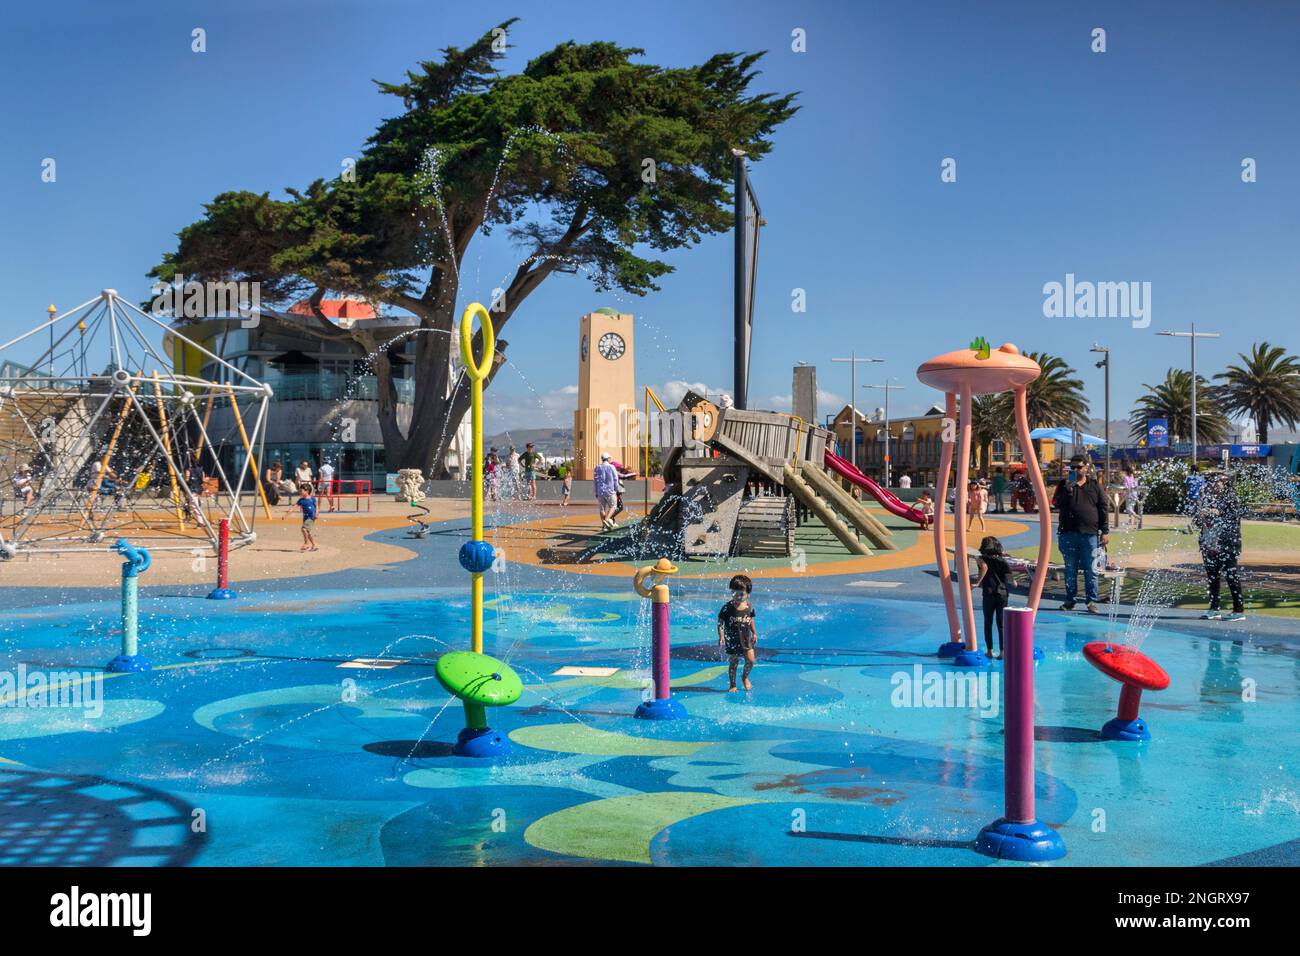 31 dicembre 2022: Christchurch, Nuova Zelanda - New Brighton Splash Park and Playground in una calda giornata estiva, bambini e famiglie giocano in acqua Foto Stock